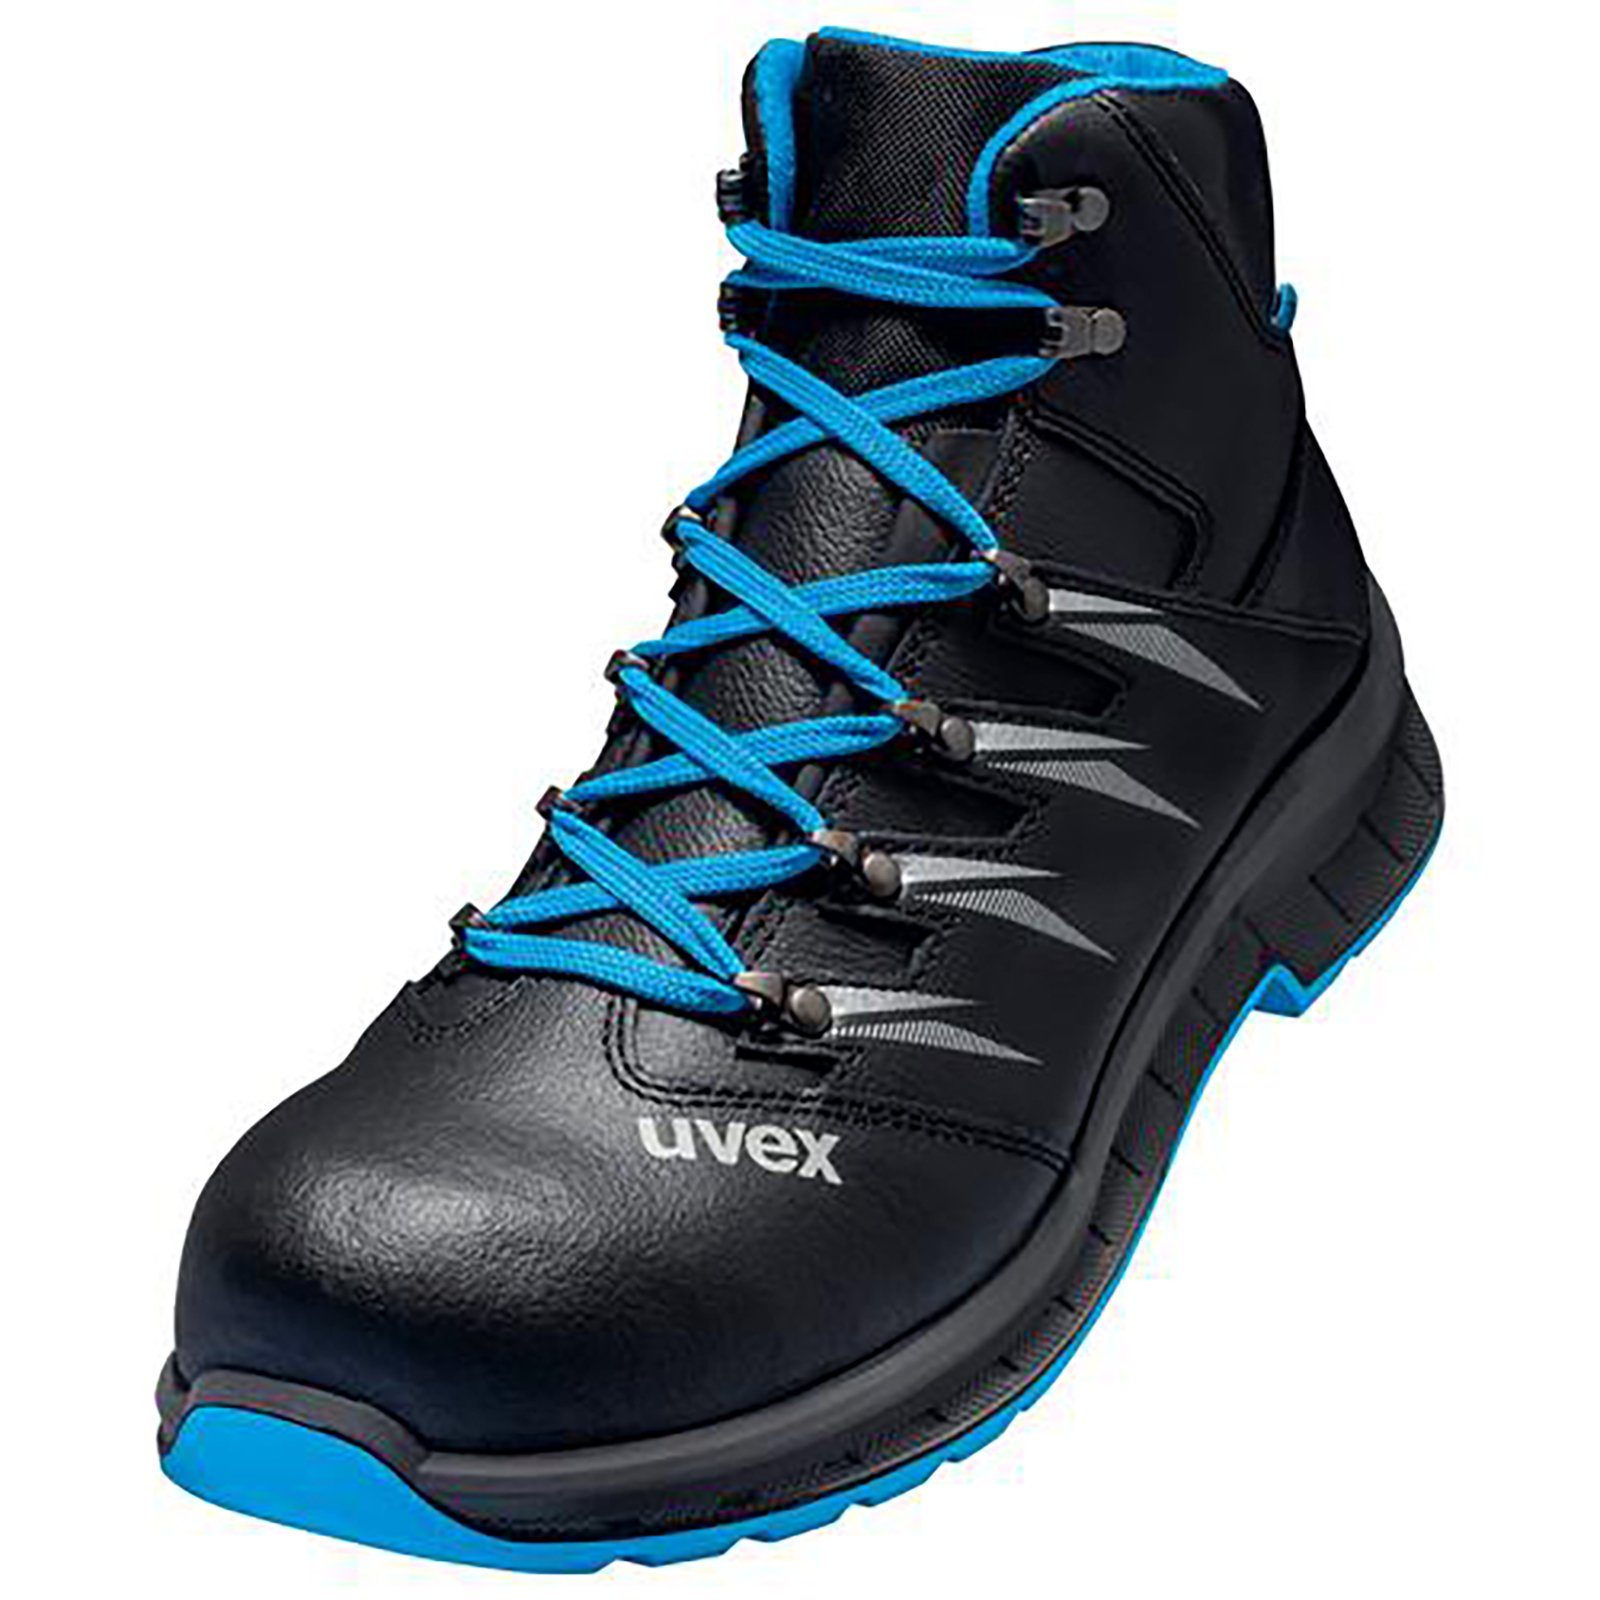 Uvex 2 trend Stiefel S2 blau, schwarz Weite 10 Sicherheitsstiefel